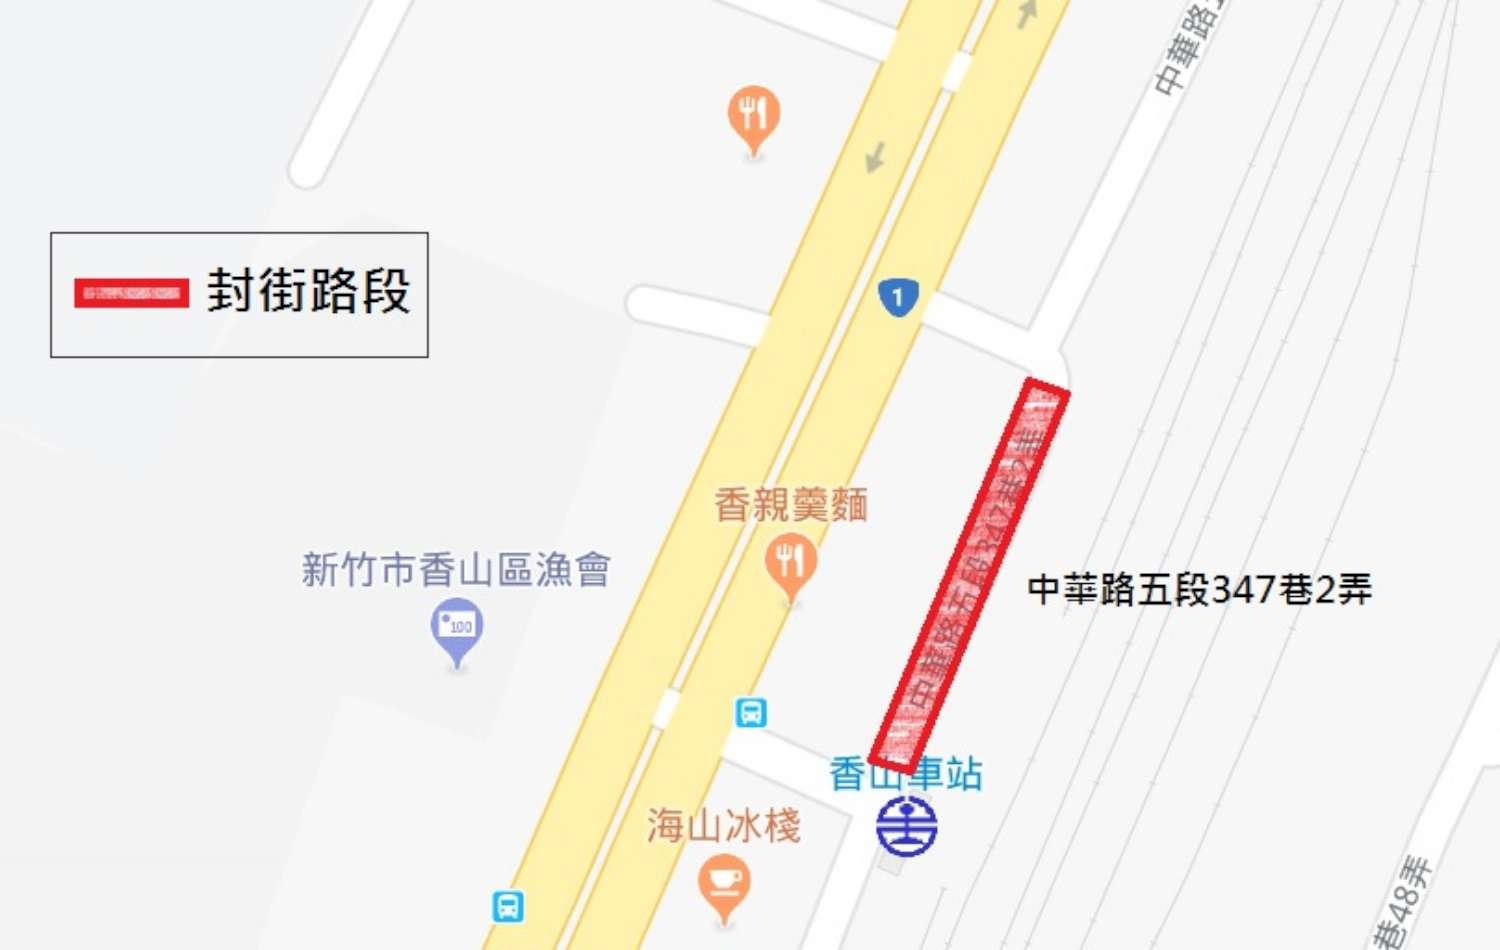 「香山火車站90周年檜樂慶典活動」交通疏導措施